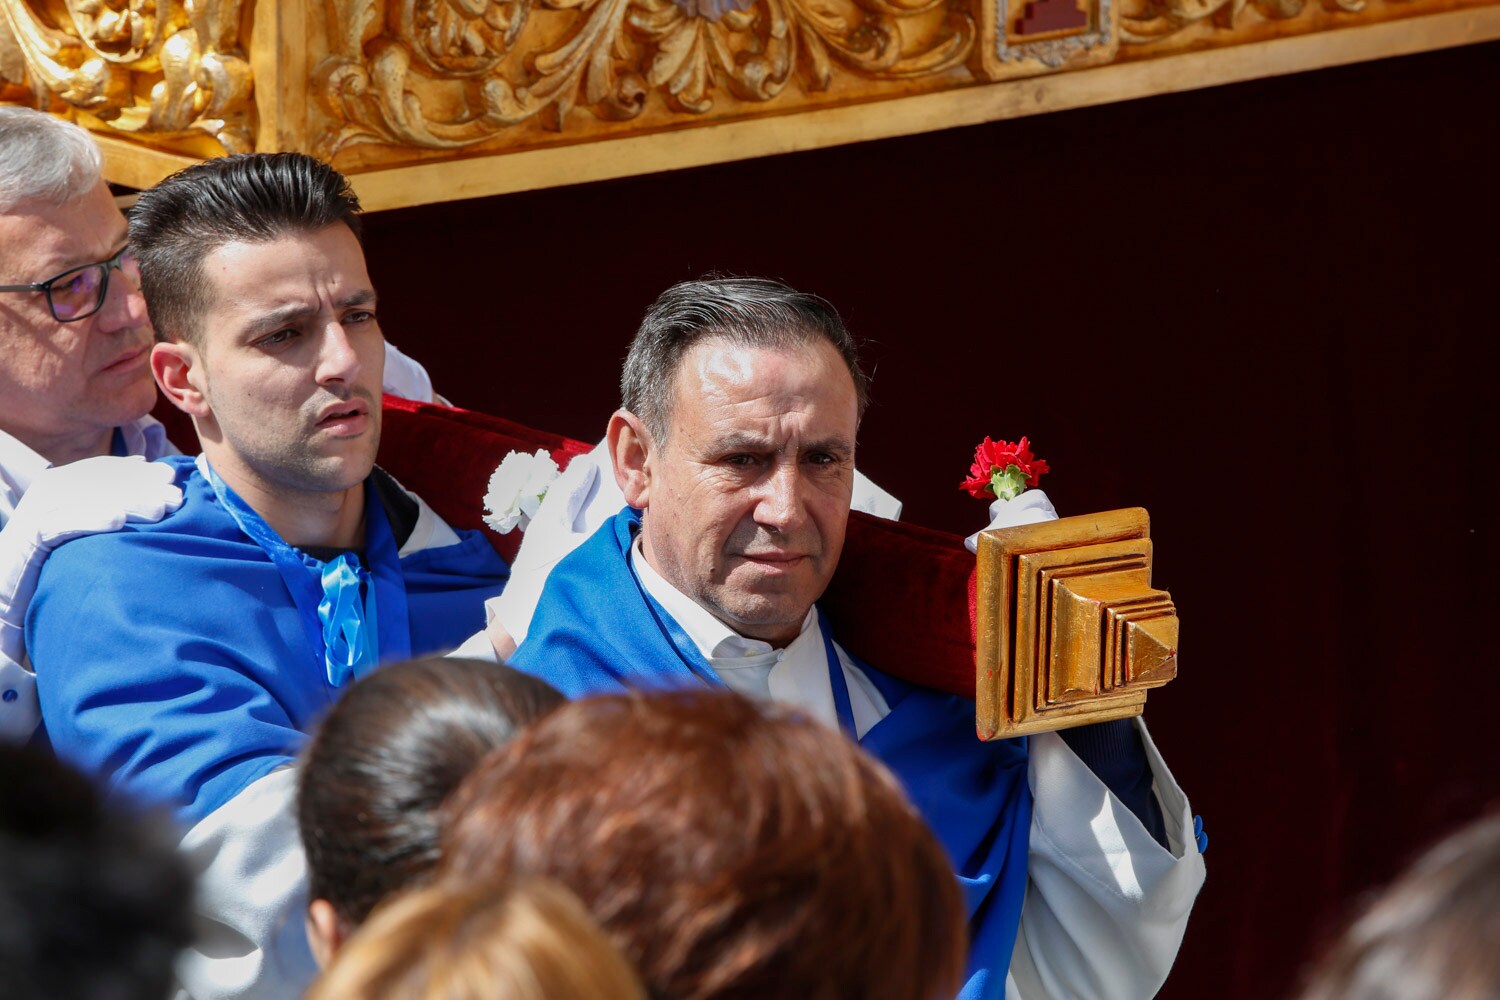 Fotos: La procesión del Encuentro cierra la Semana Santa salmantina 1/2